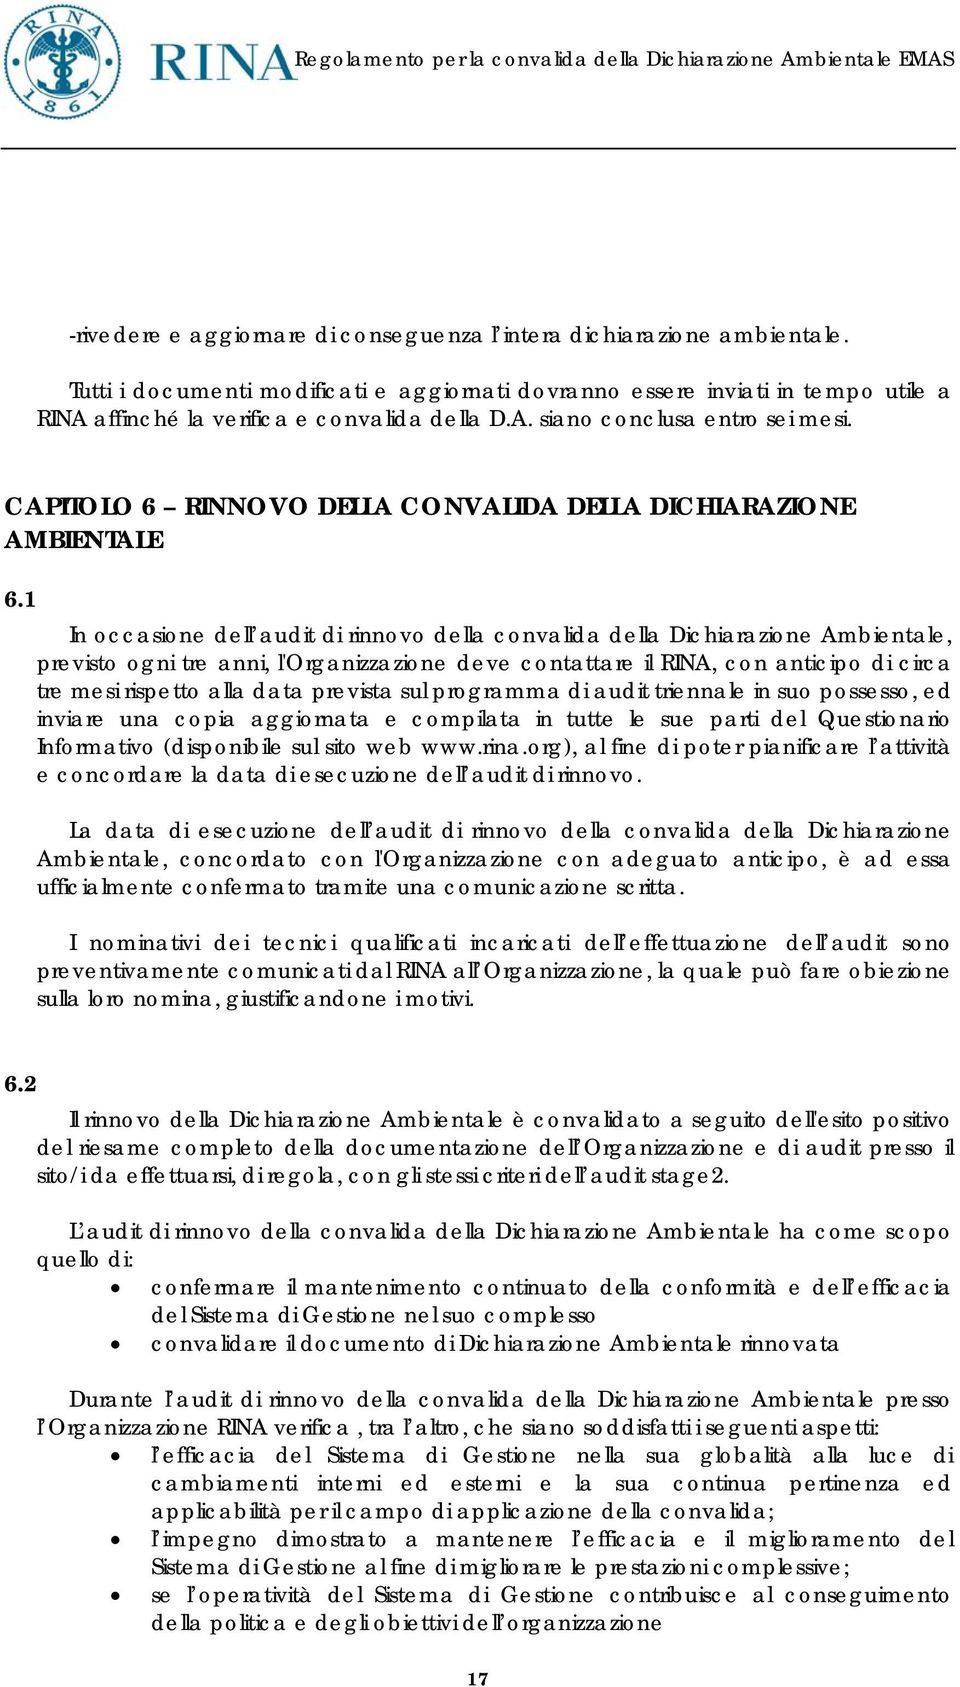 CAPITOLO 6 RINNOVO DELLA CONVALIDA DELLA DICHIARAZIONE AMBIENTALE 6.